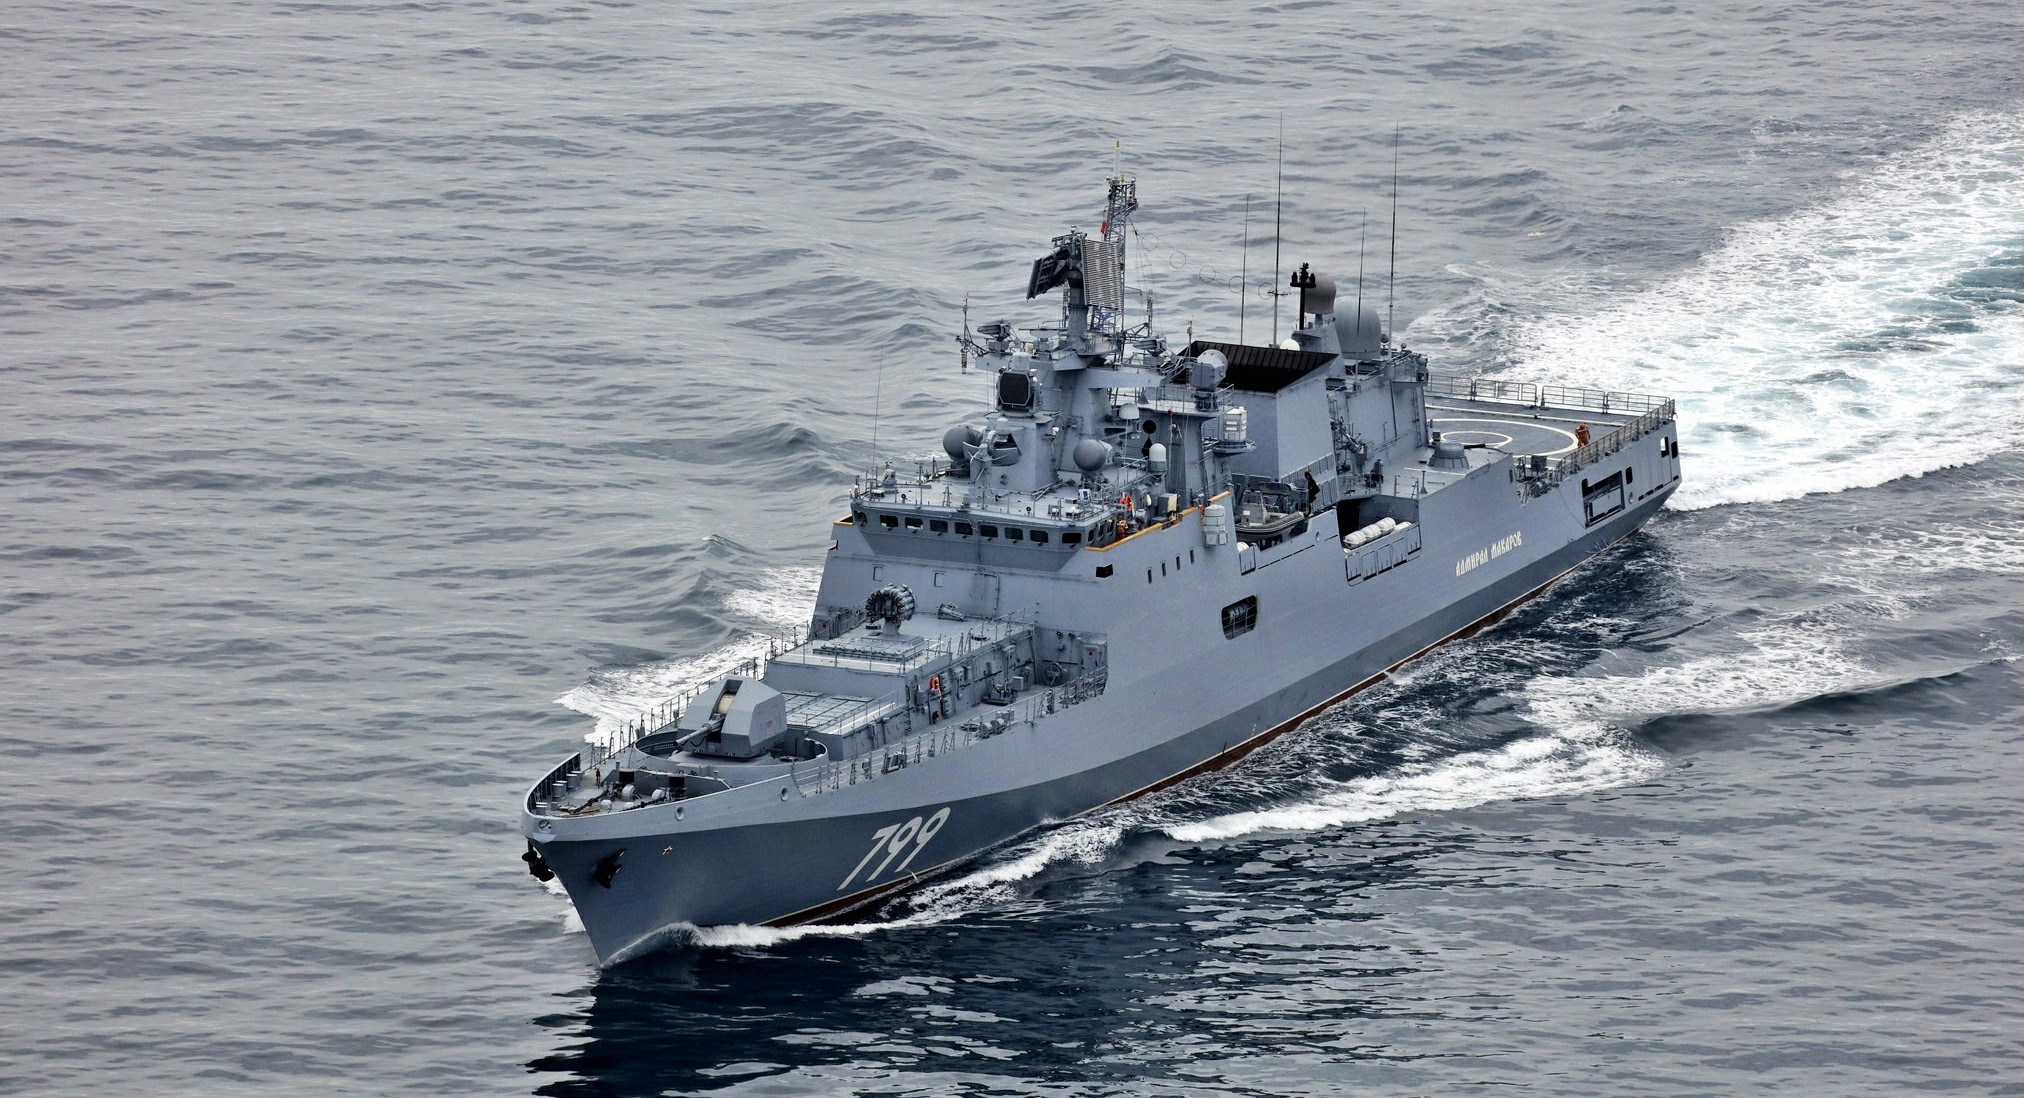 Боевые корабли ЧФ РФ начали учения в Чёрном море, в тот же район направляются эсминцы США (видео)